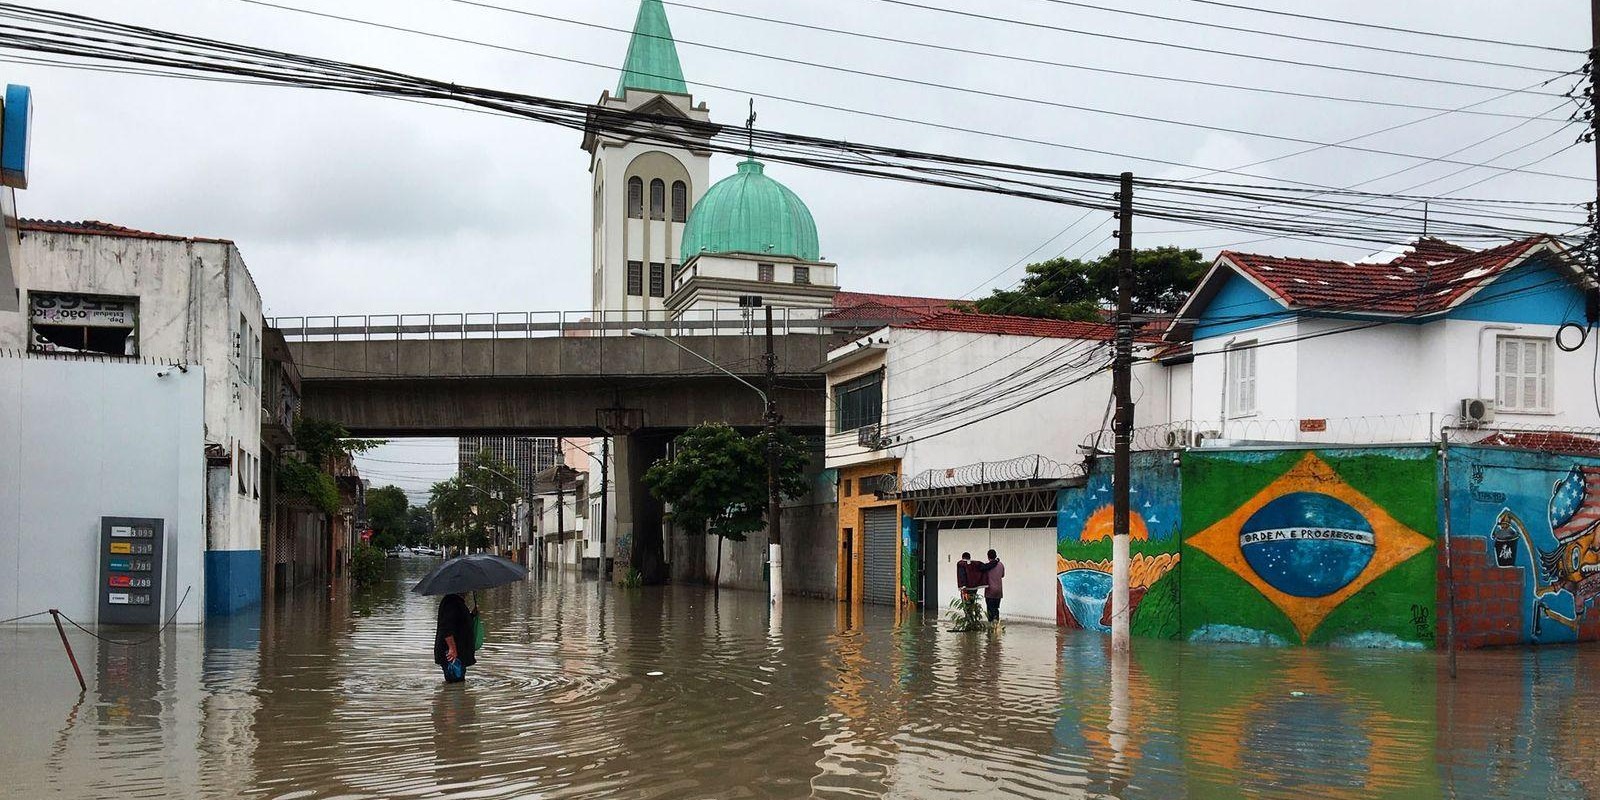 Brasil já sente impactos das mudanças climáticas e situação pode se agravar